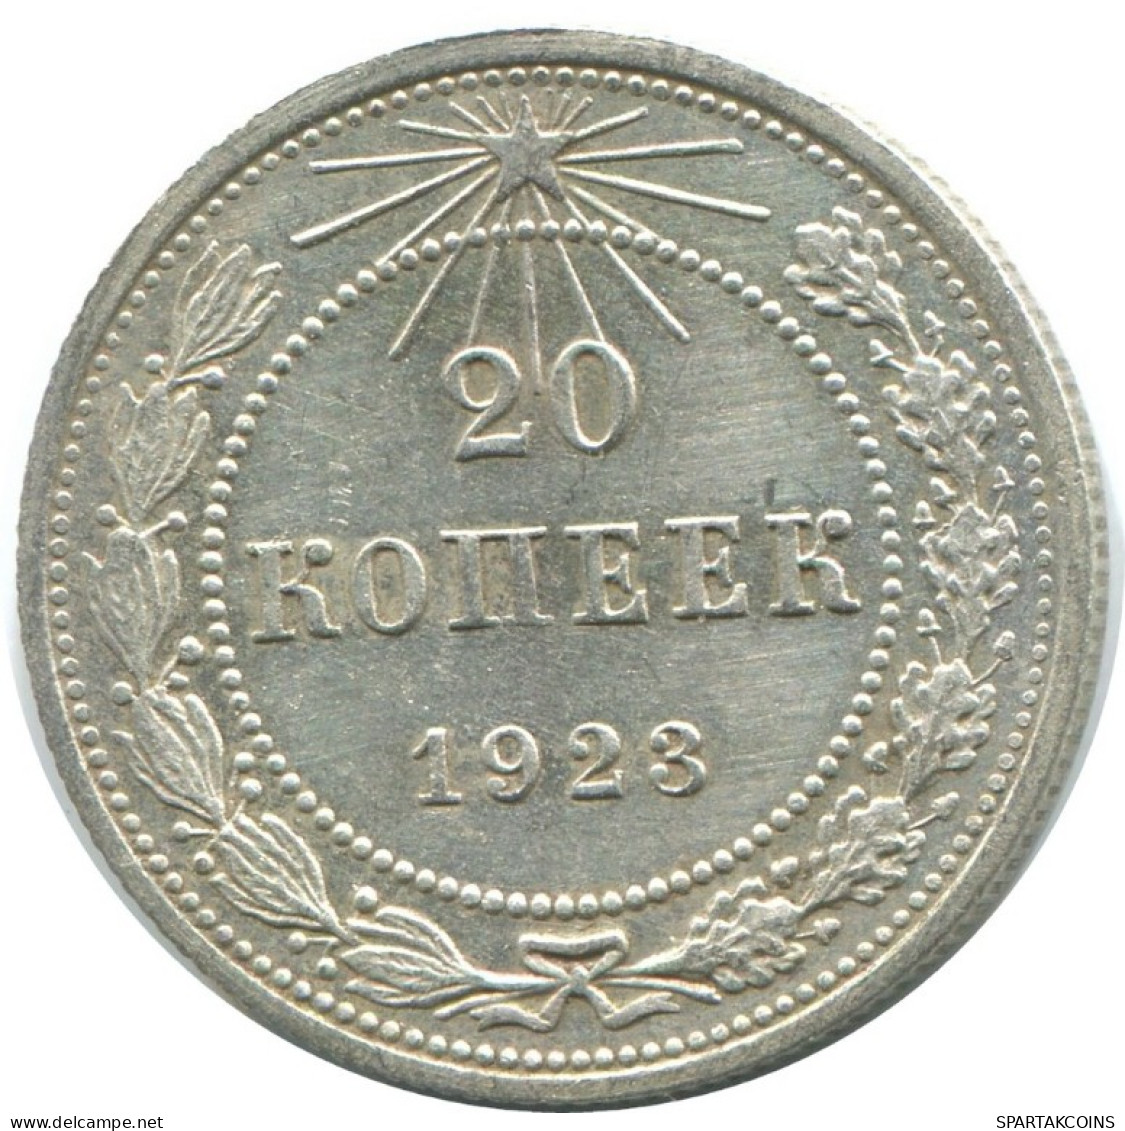 20 KOPEKS 1923 RUSSIA RSFSR SILVER Coin HIGH GRADE #AF662.U.A - Russland